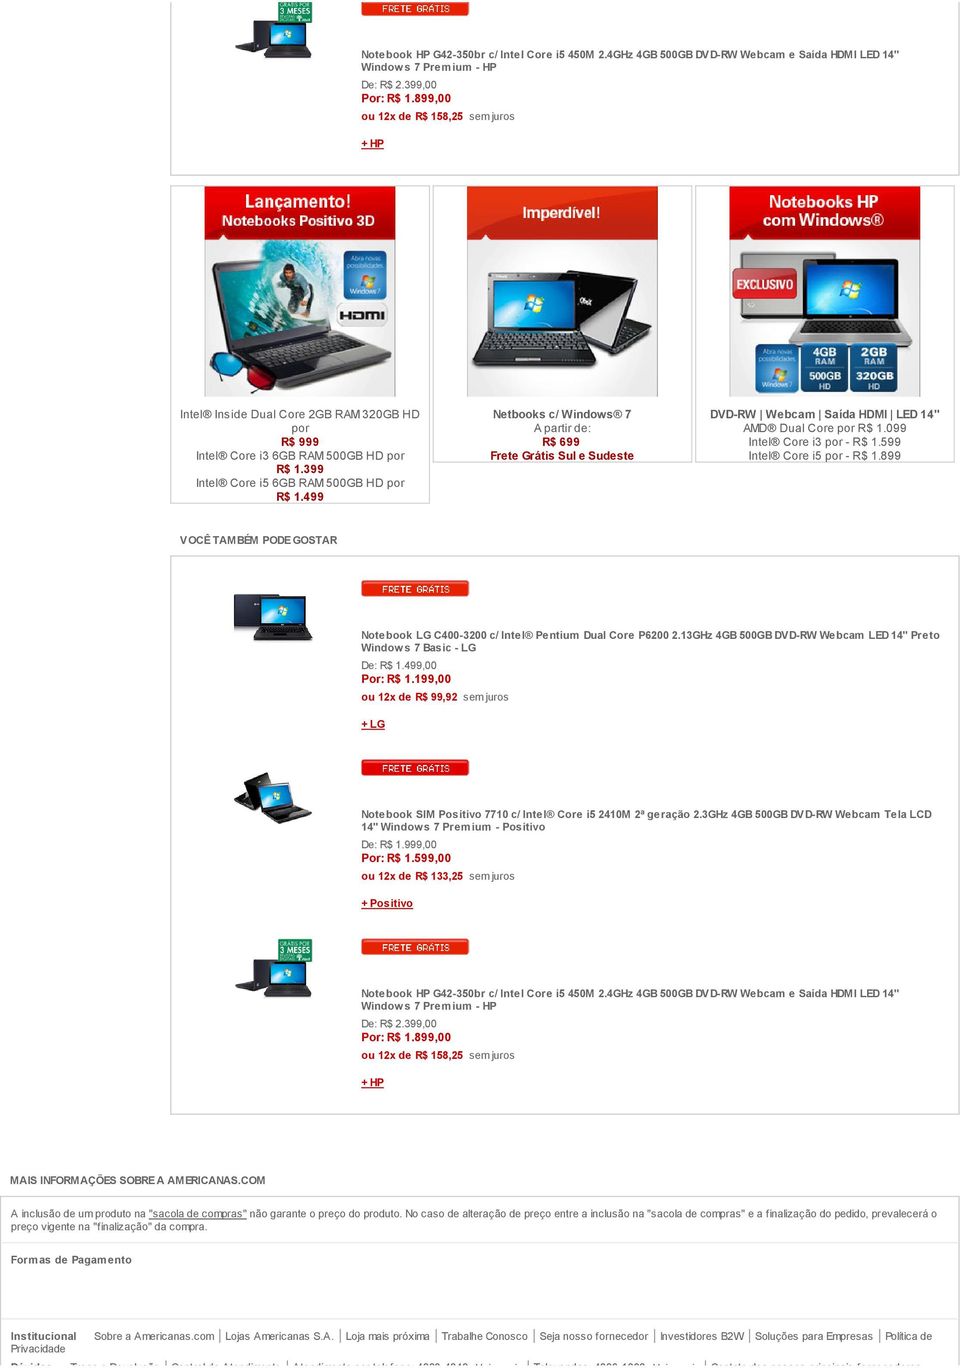 499 Netbooks c/ Windows 7 A partir de: R$ 699 Frete Grátis Sul e Sudeste DVD-RW Webcam Saída HDMI LED 14" AMD Dual Core por R$ 1.099 Intel Core i3 por - R$ 1.599 Intel Core i5 por - R$ 1.